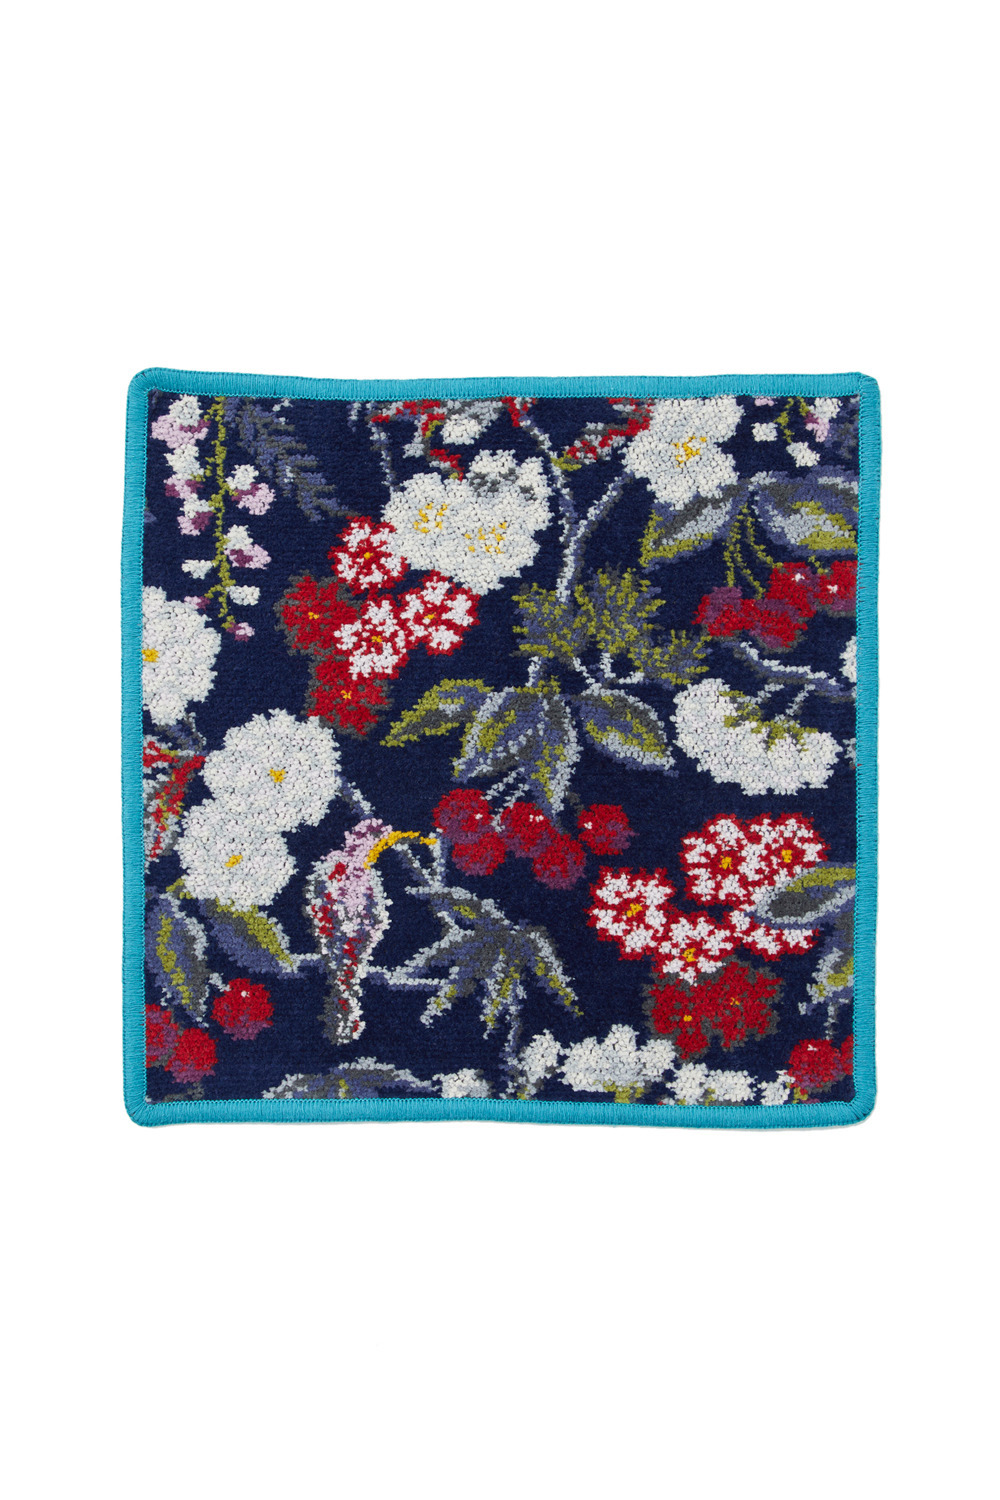 FEILER × KEITAMARUYAMA Botanical Cherry Handkerchief 詳細画像 ブルー